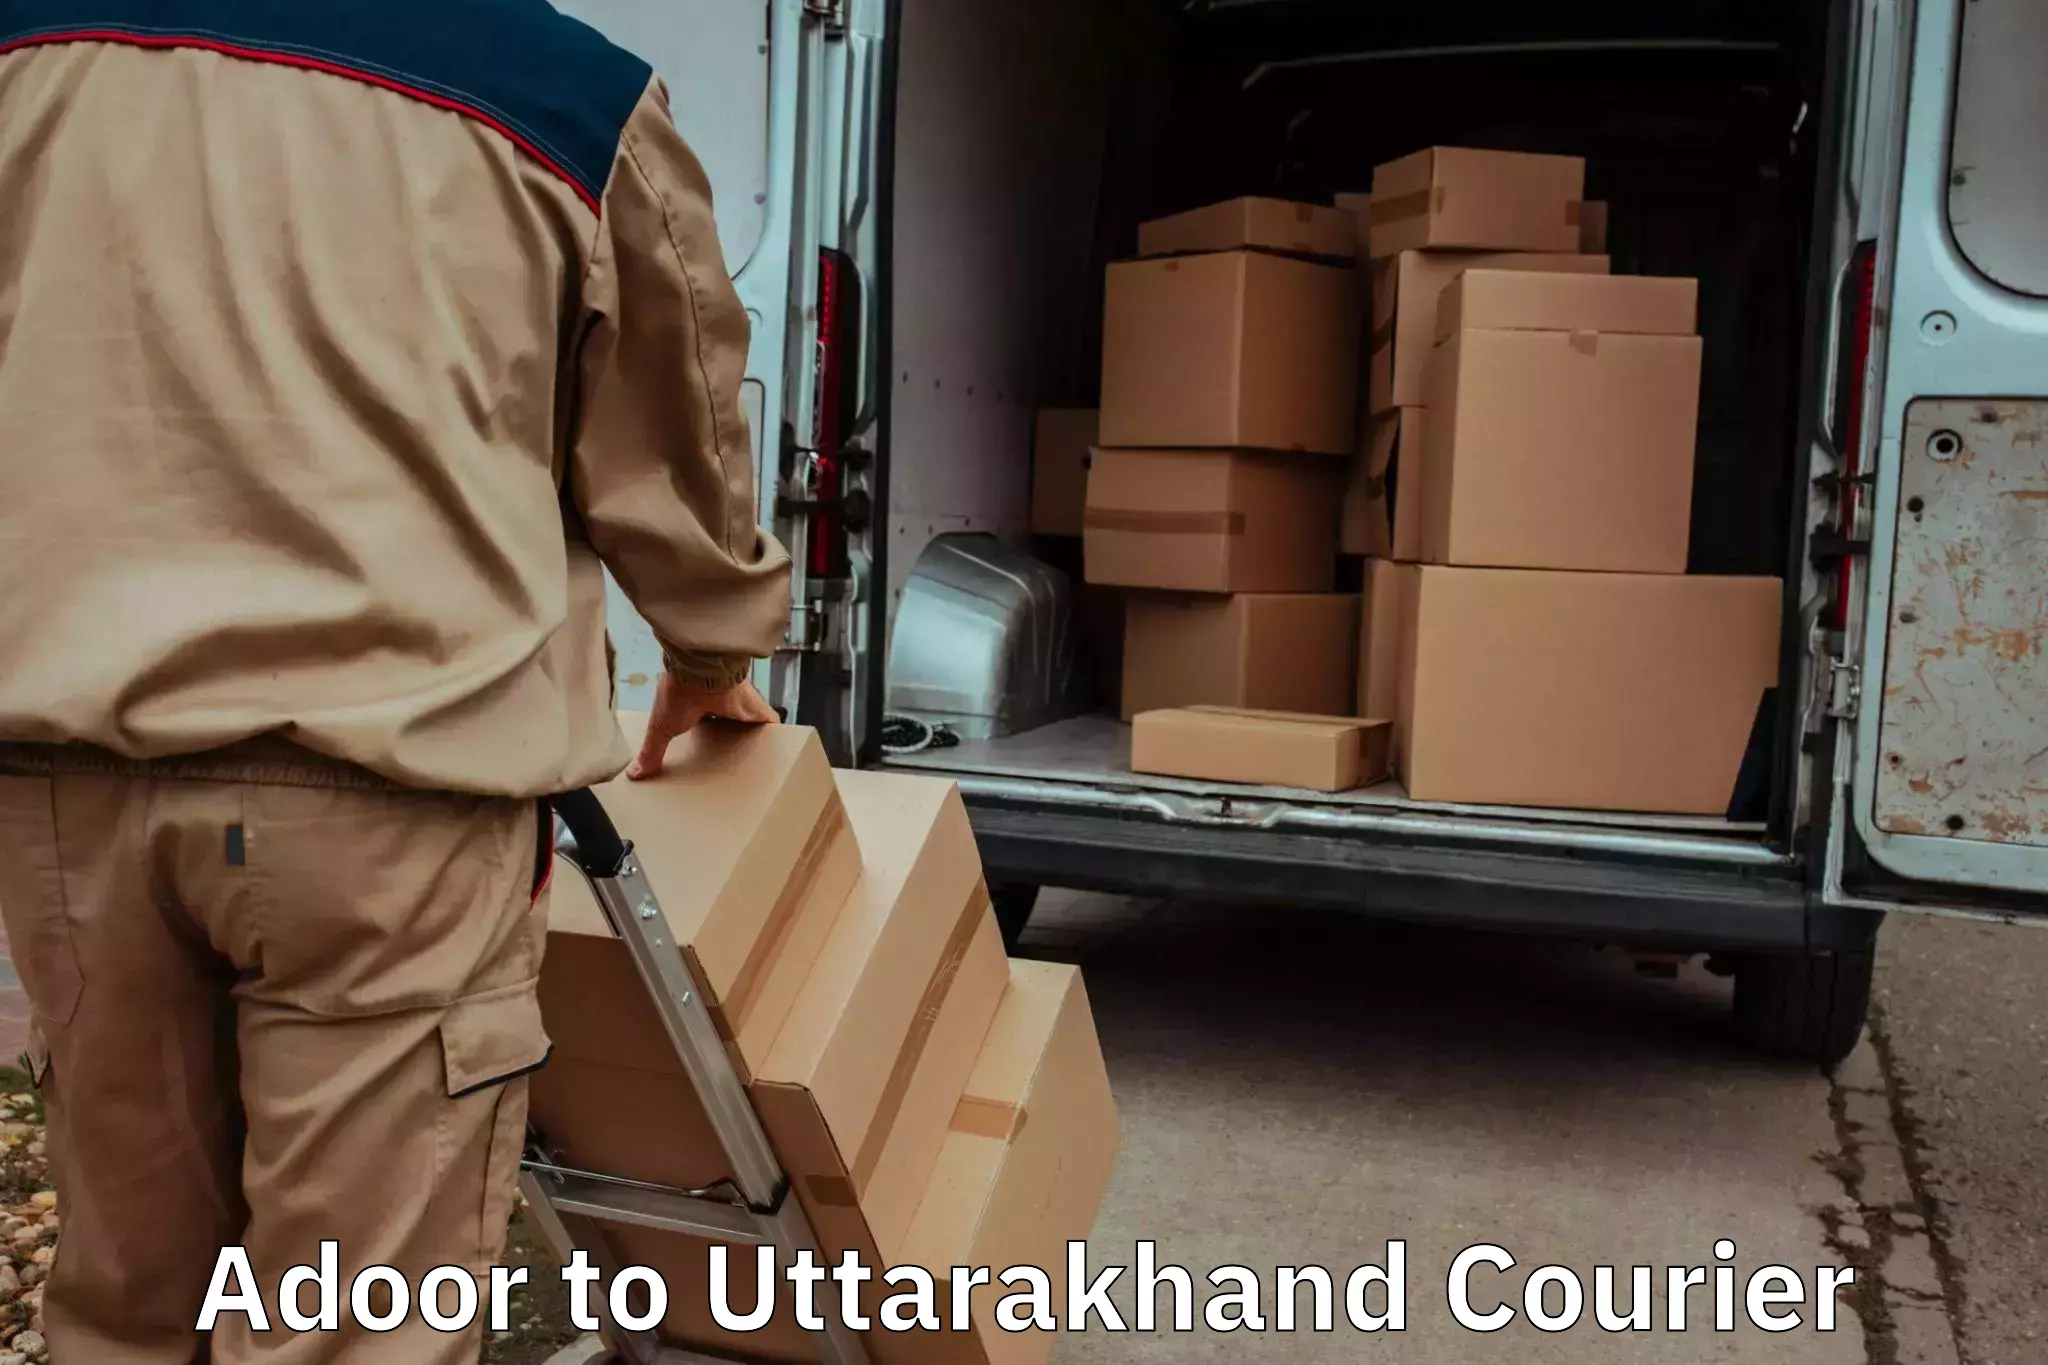 Furniture transport professionals Adoor to IIT Roorkee